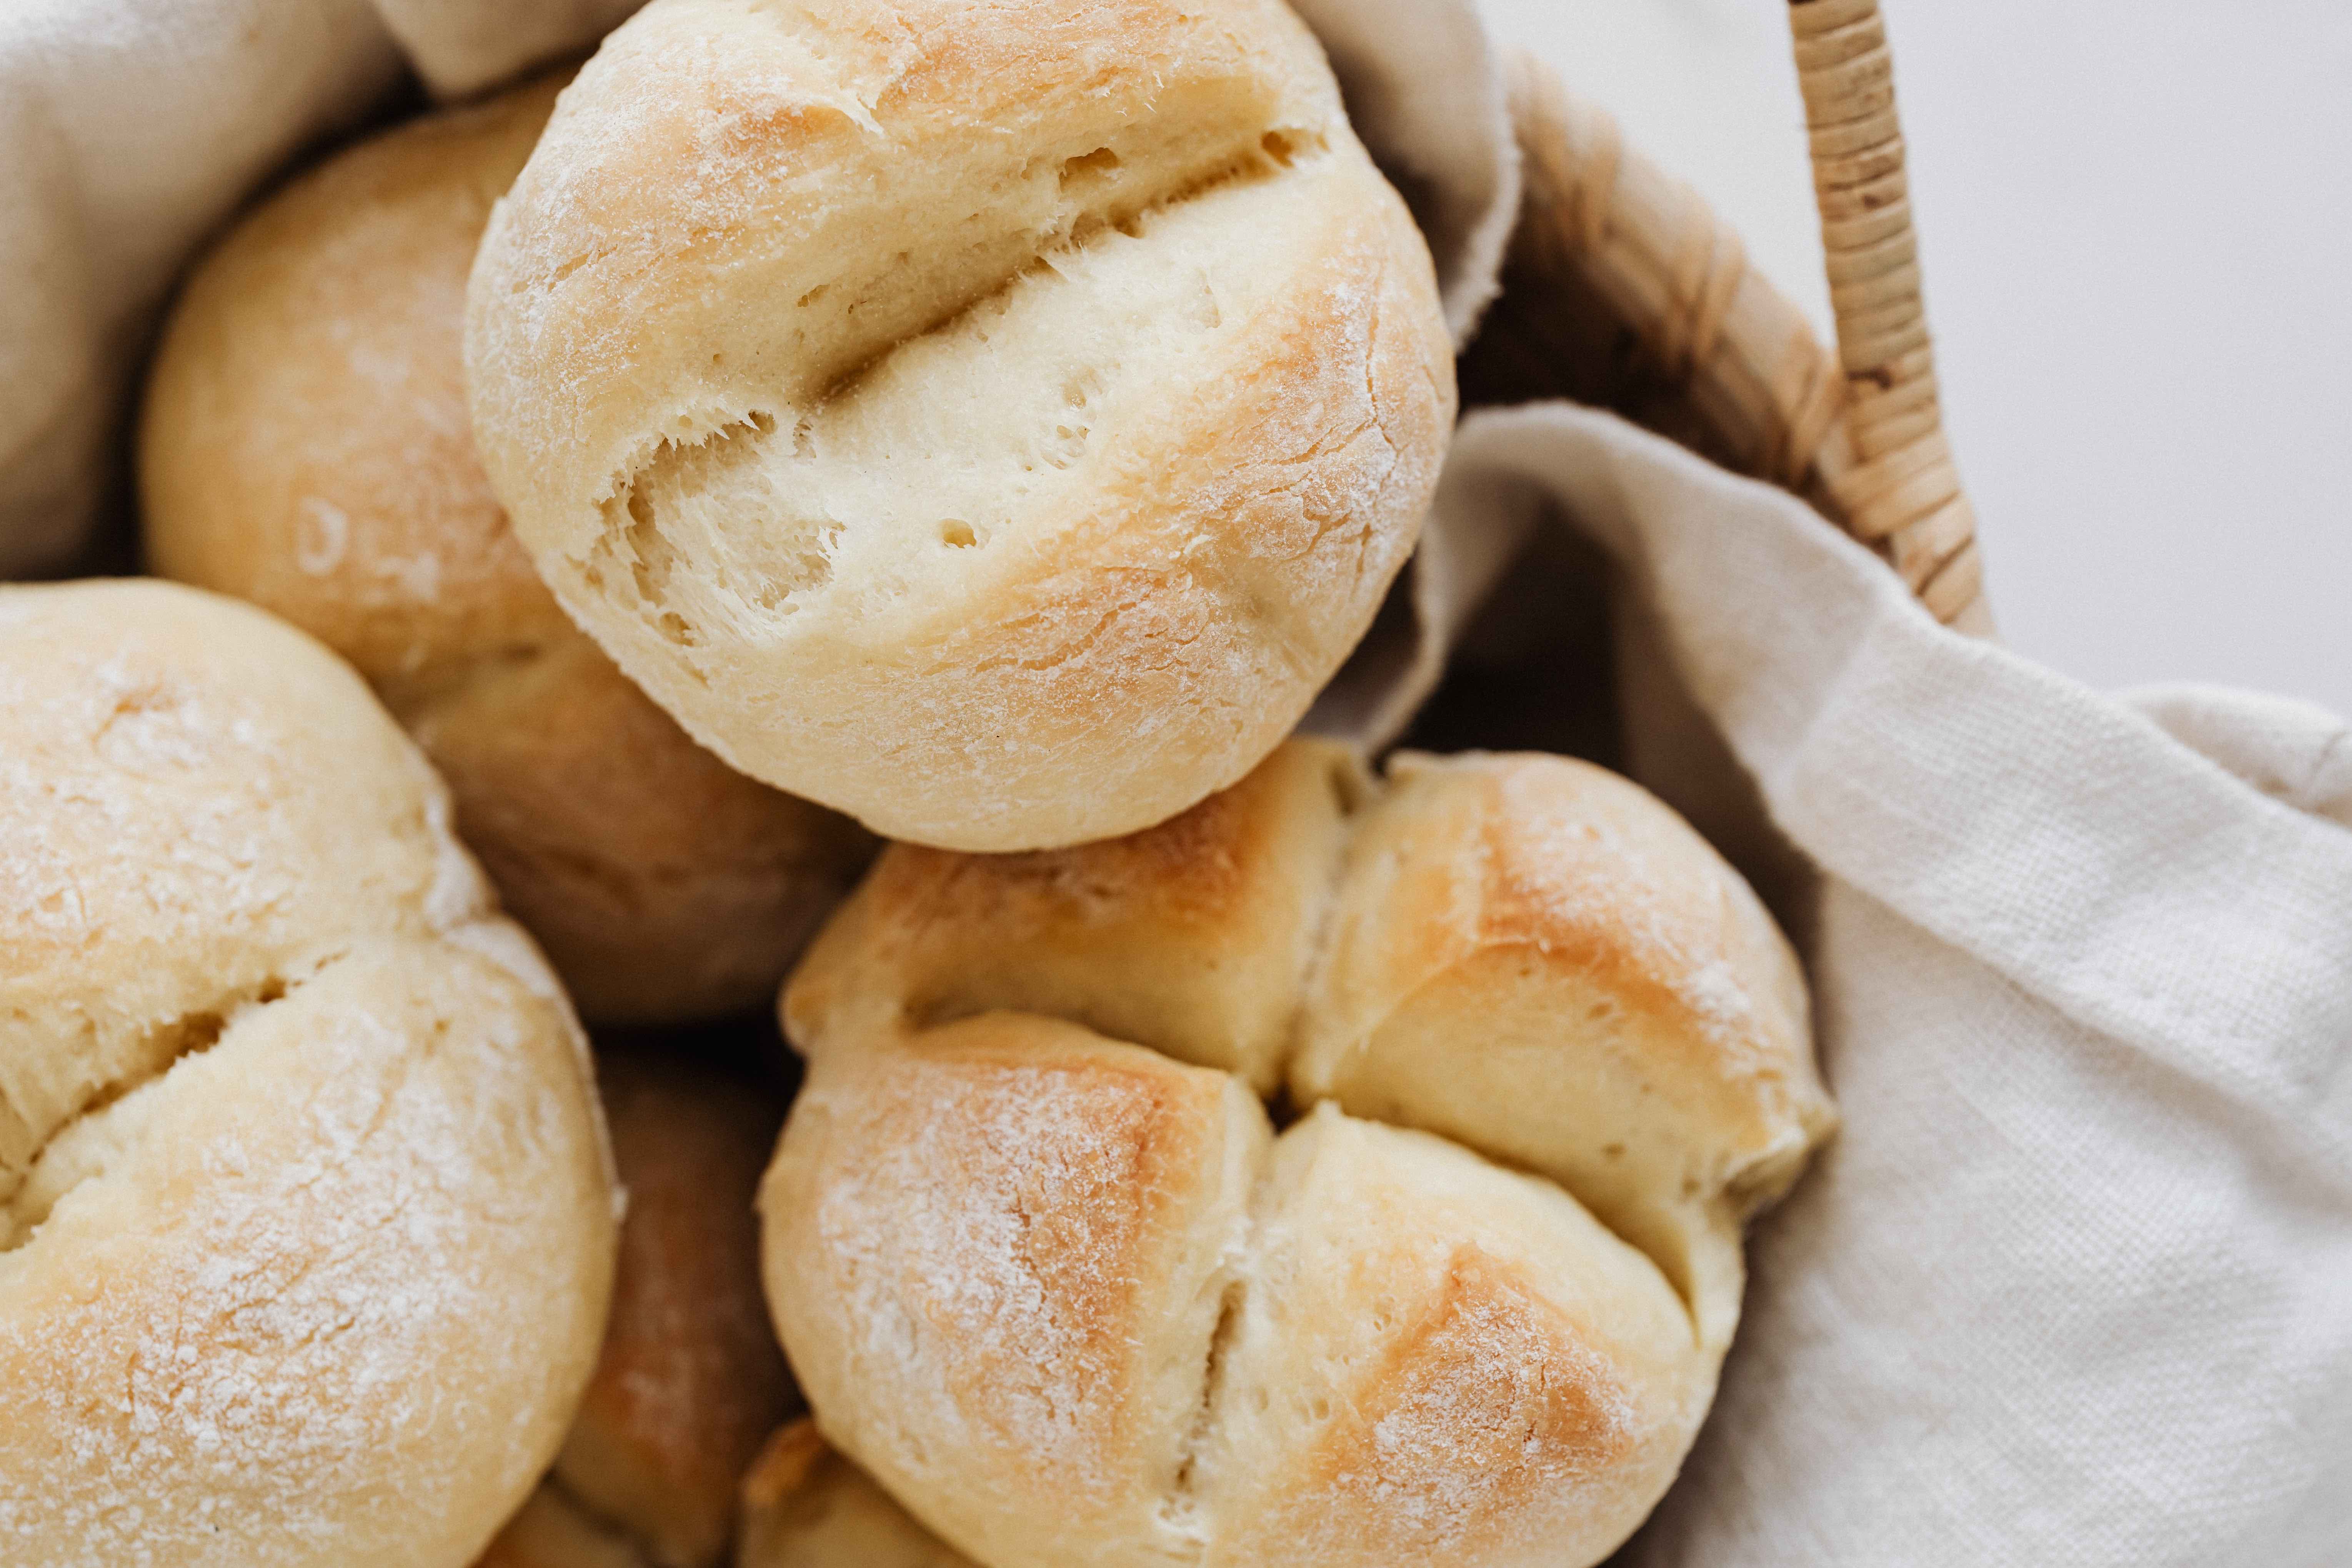 Potato bread rolls